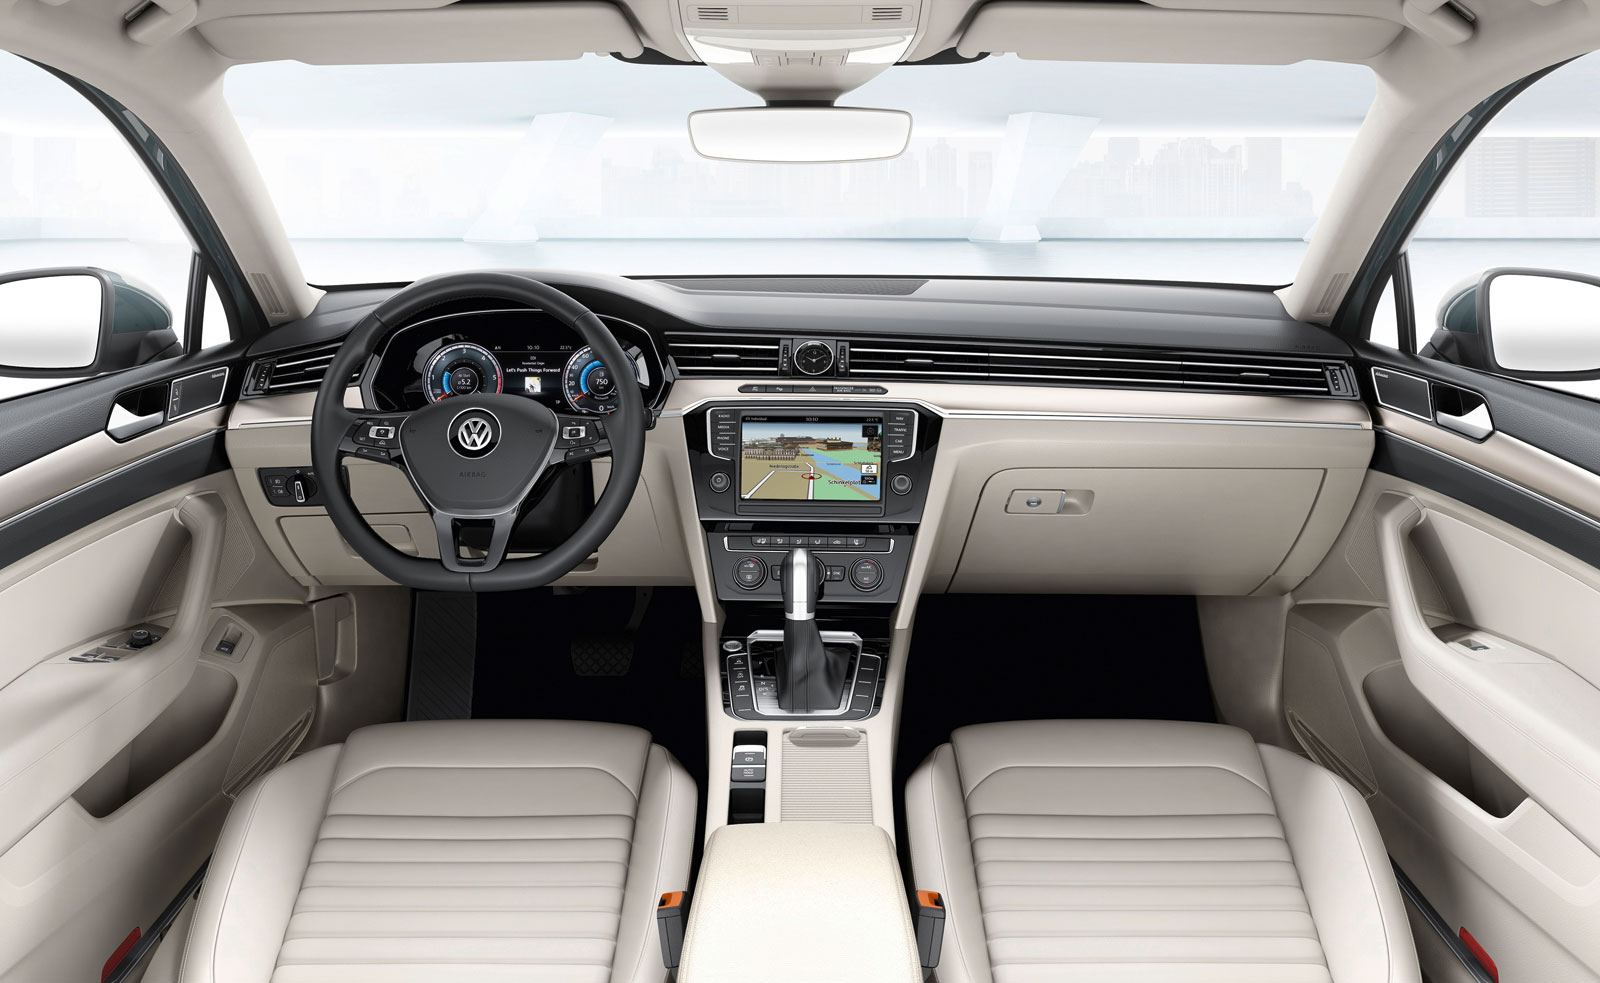 New-Volkswagen-Passat-Interior-02.jpg